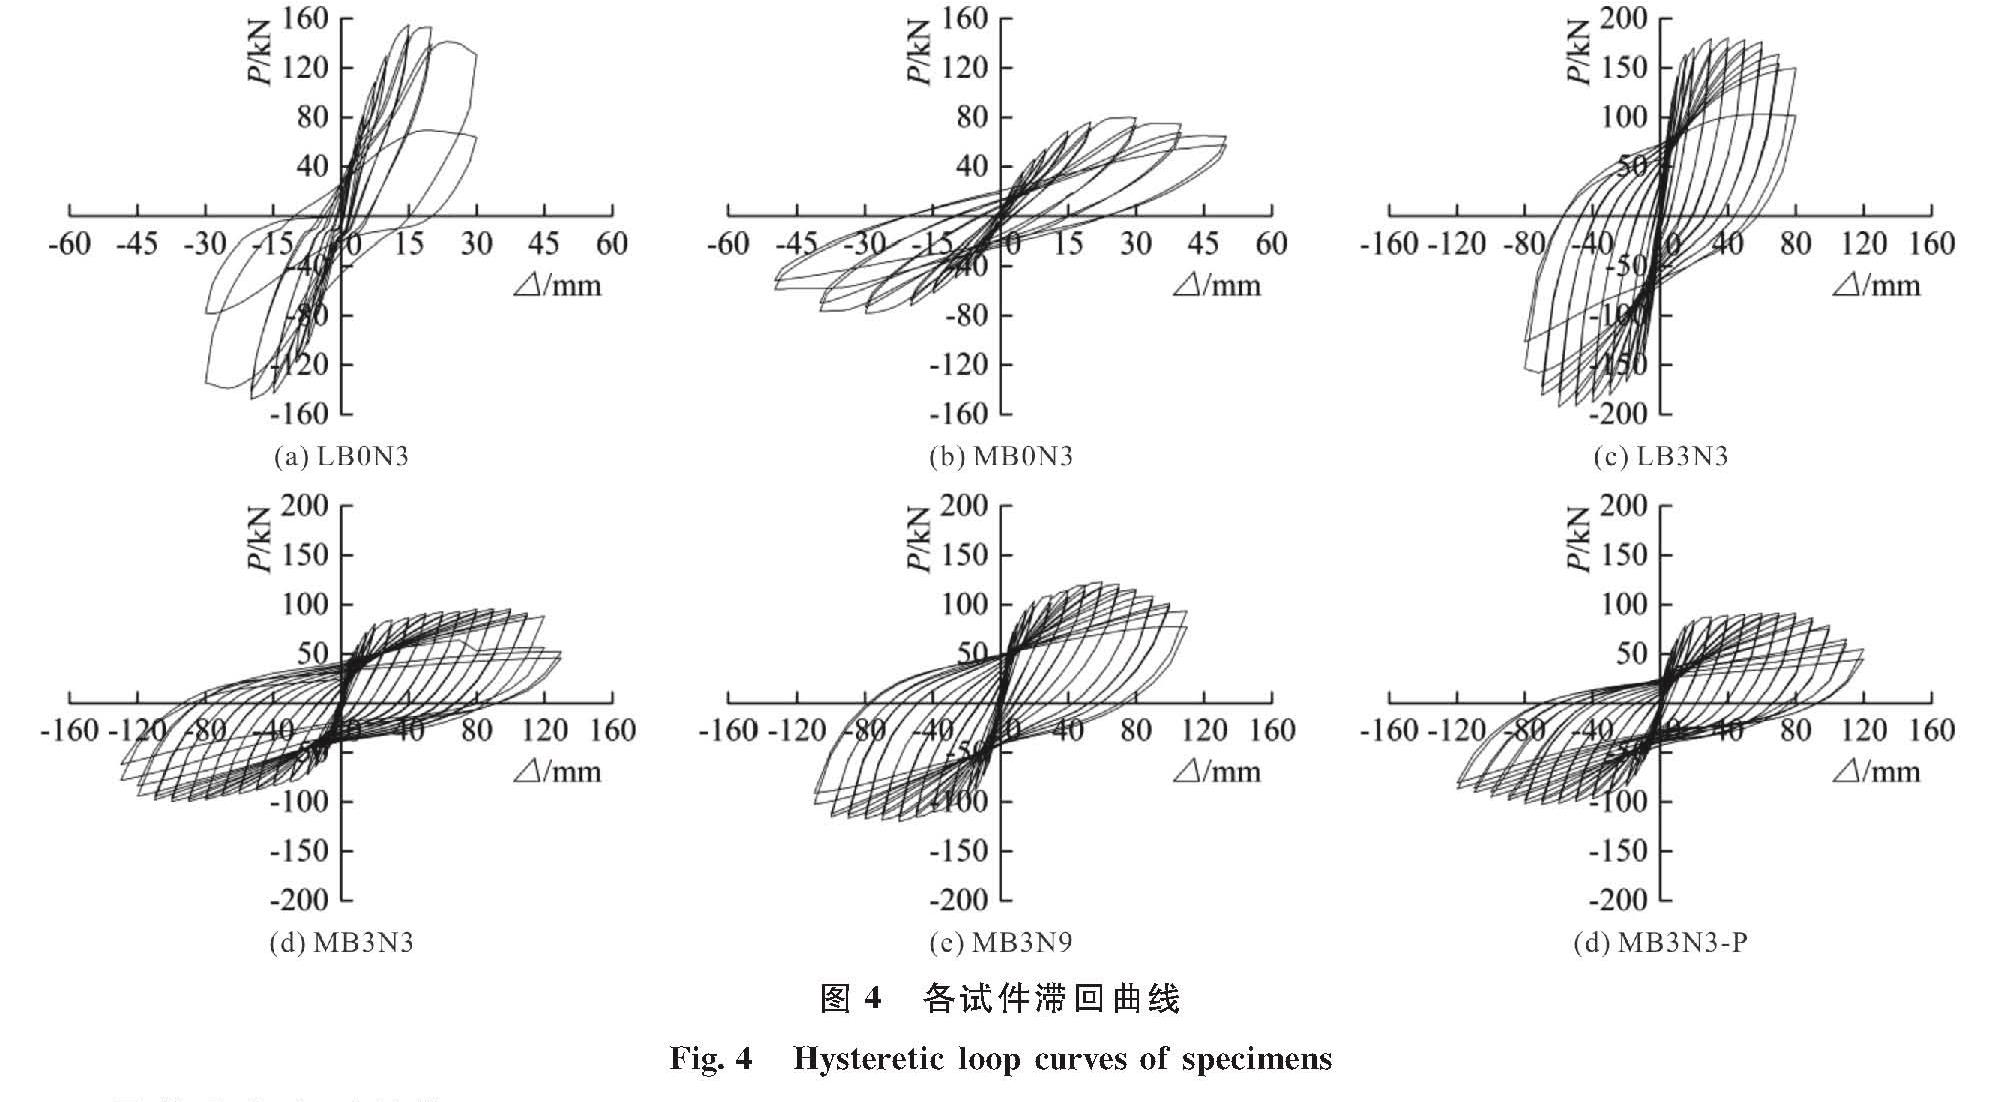 图4 各试件滞回曲线<br/>Fig.4 Hysteretic loop curves of specimens